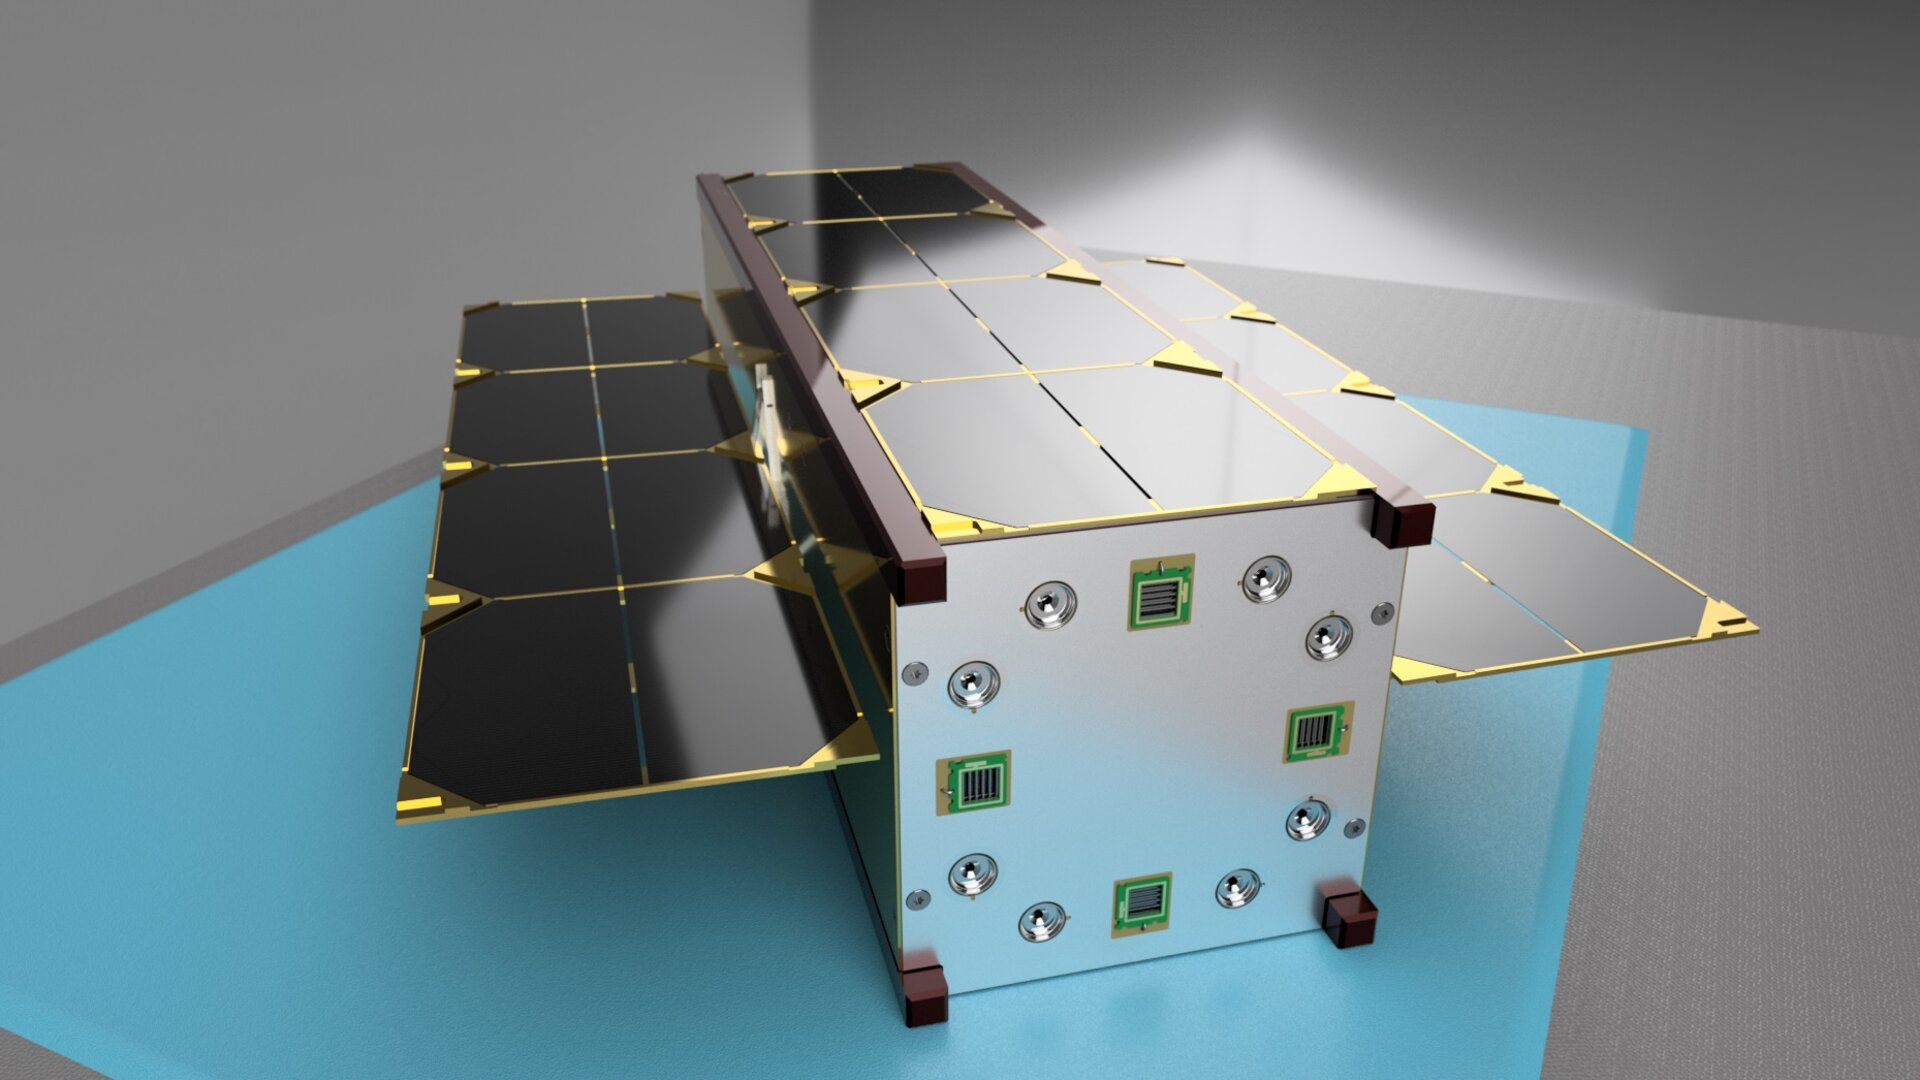 NanoFEEP in a three-unit (3U) CubeSat